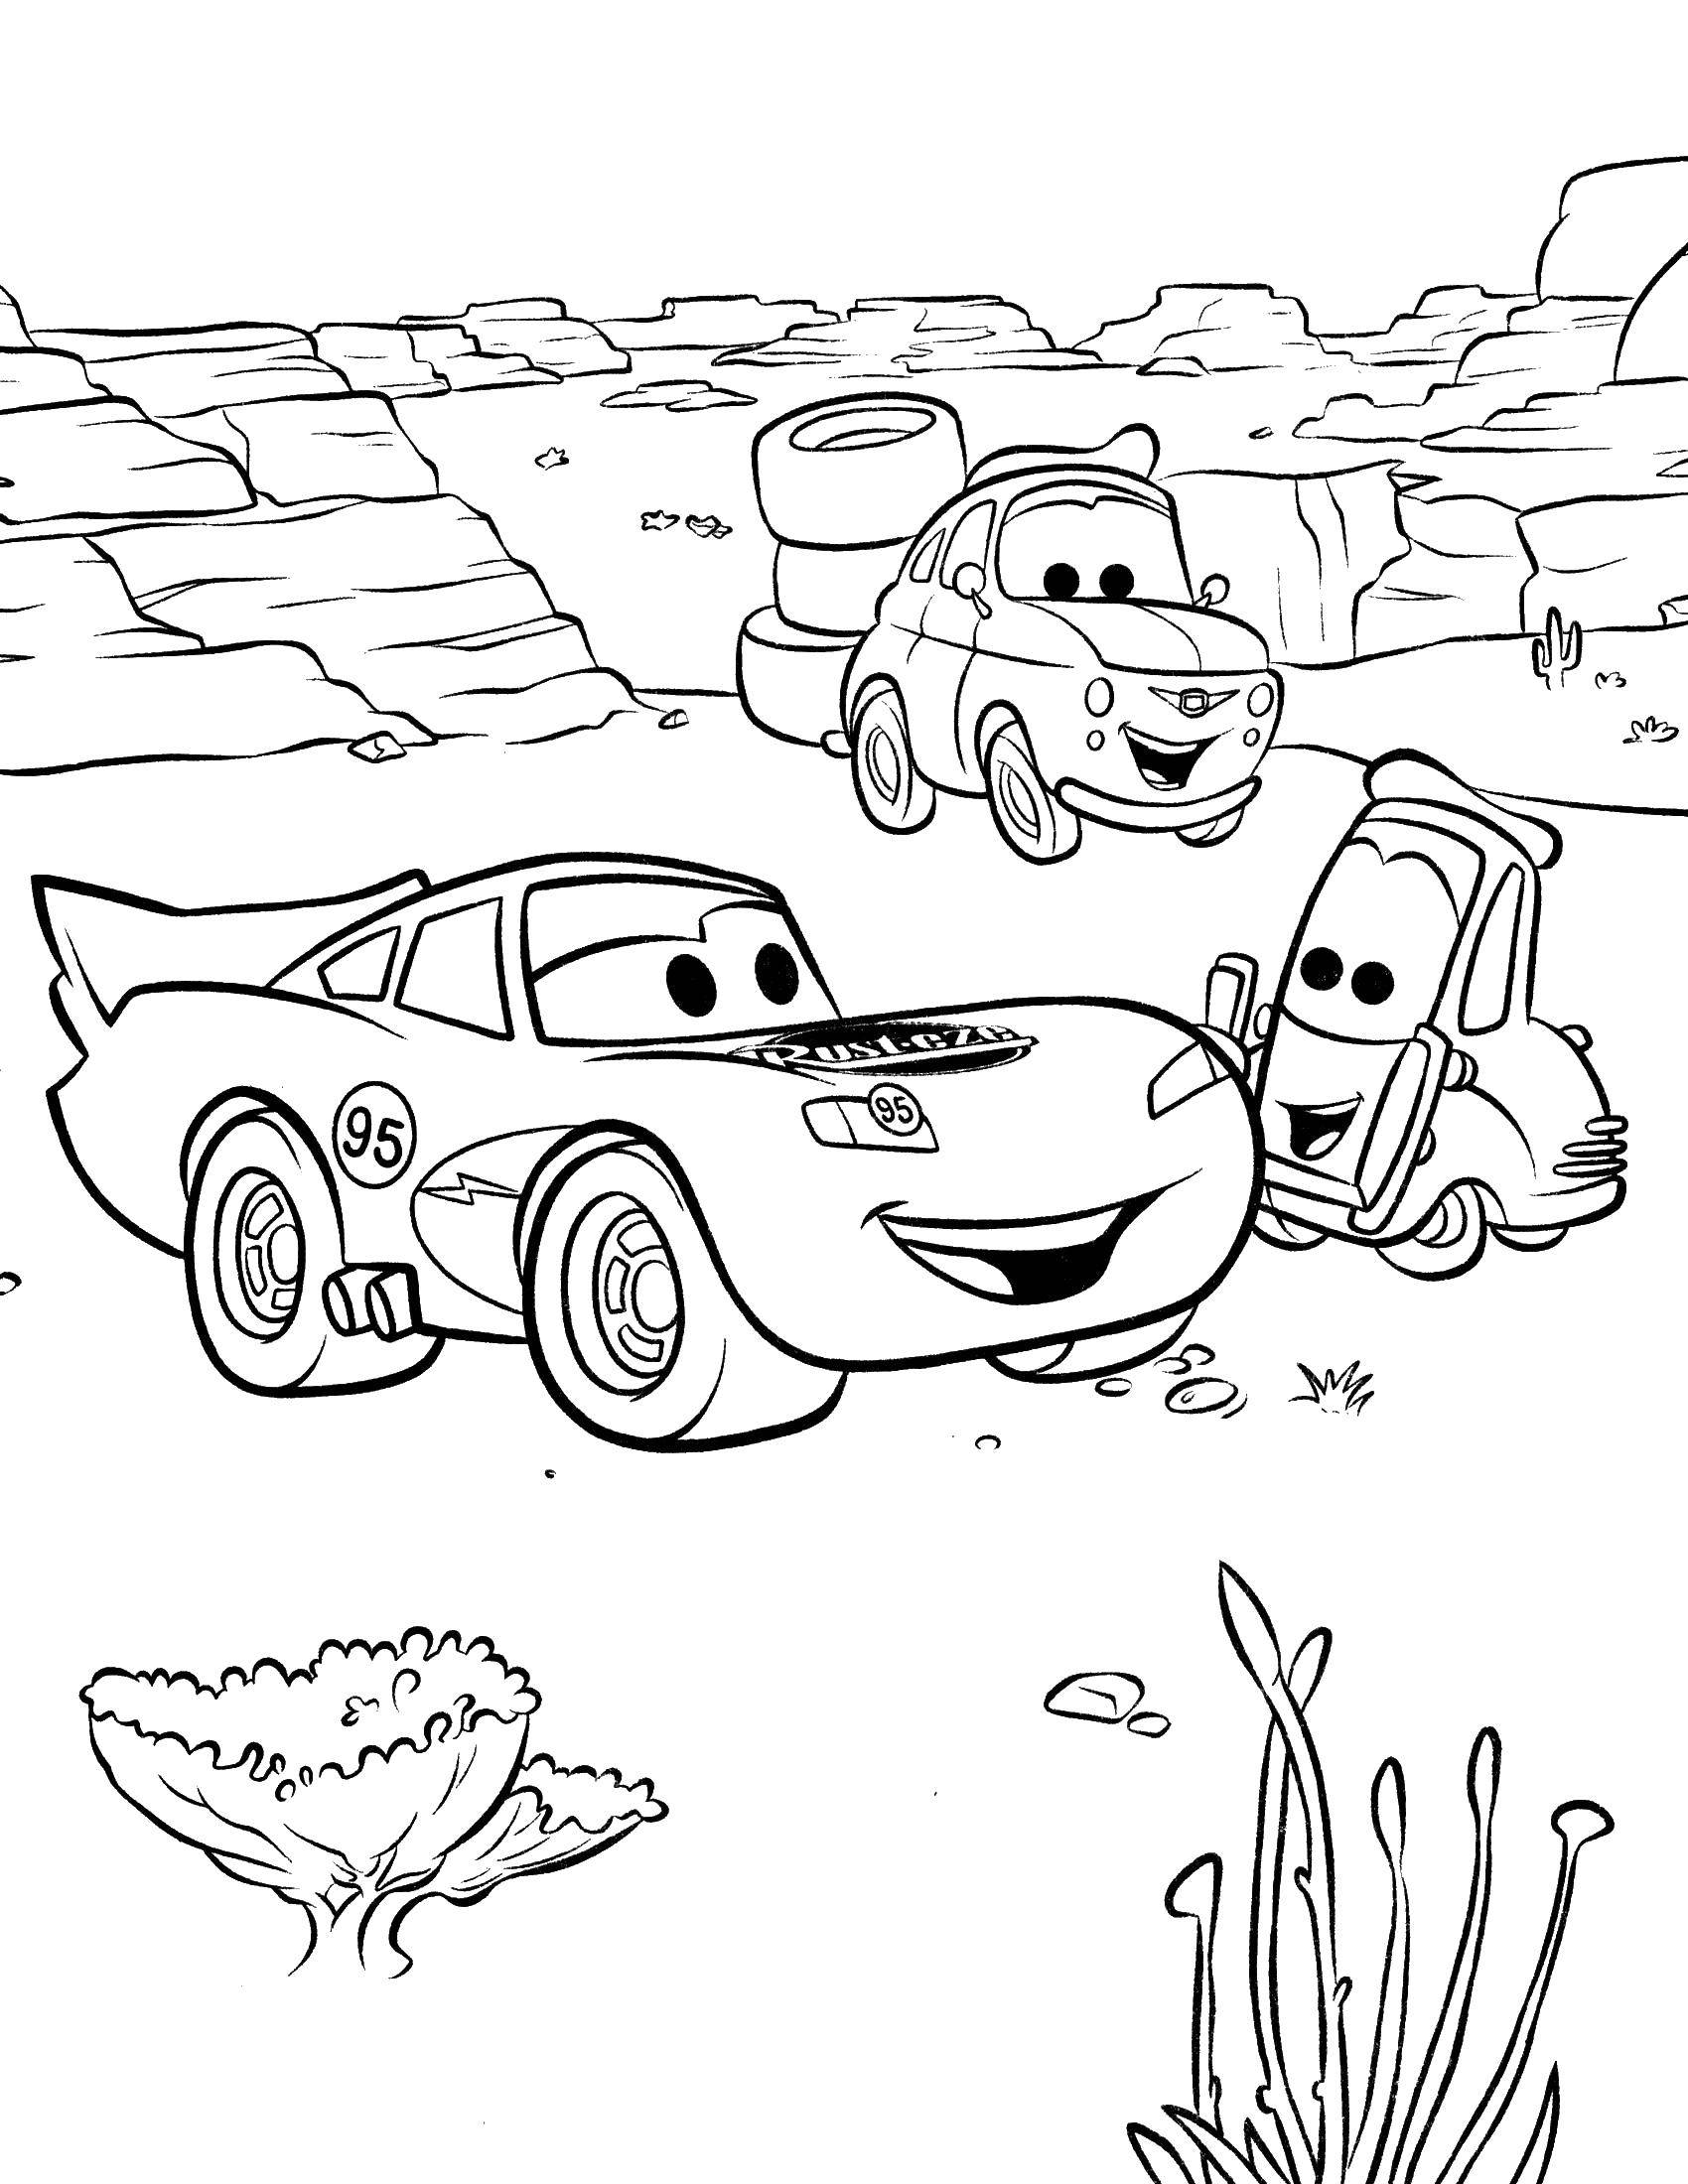 Раскраскидля мальчиков по мультфильму тачки  Гвидо помогает маквин поменять шины